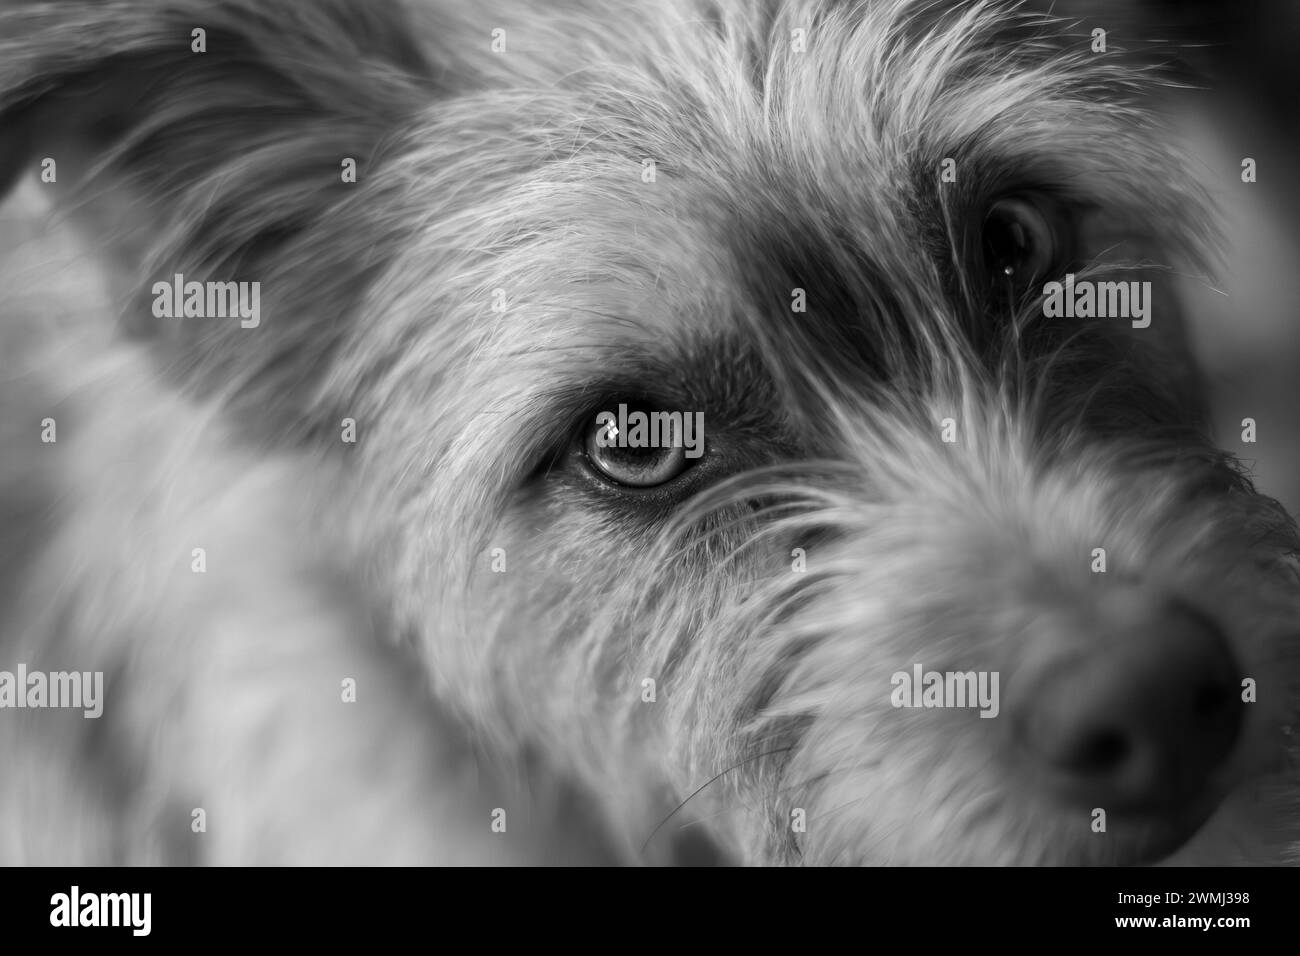 Immagine in bianco e nero di un cane terrier che guarda con attenzione la telecamera Foto Stock